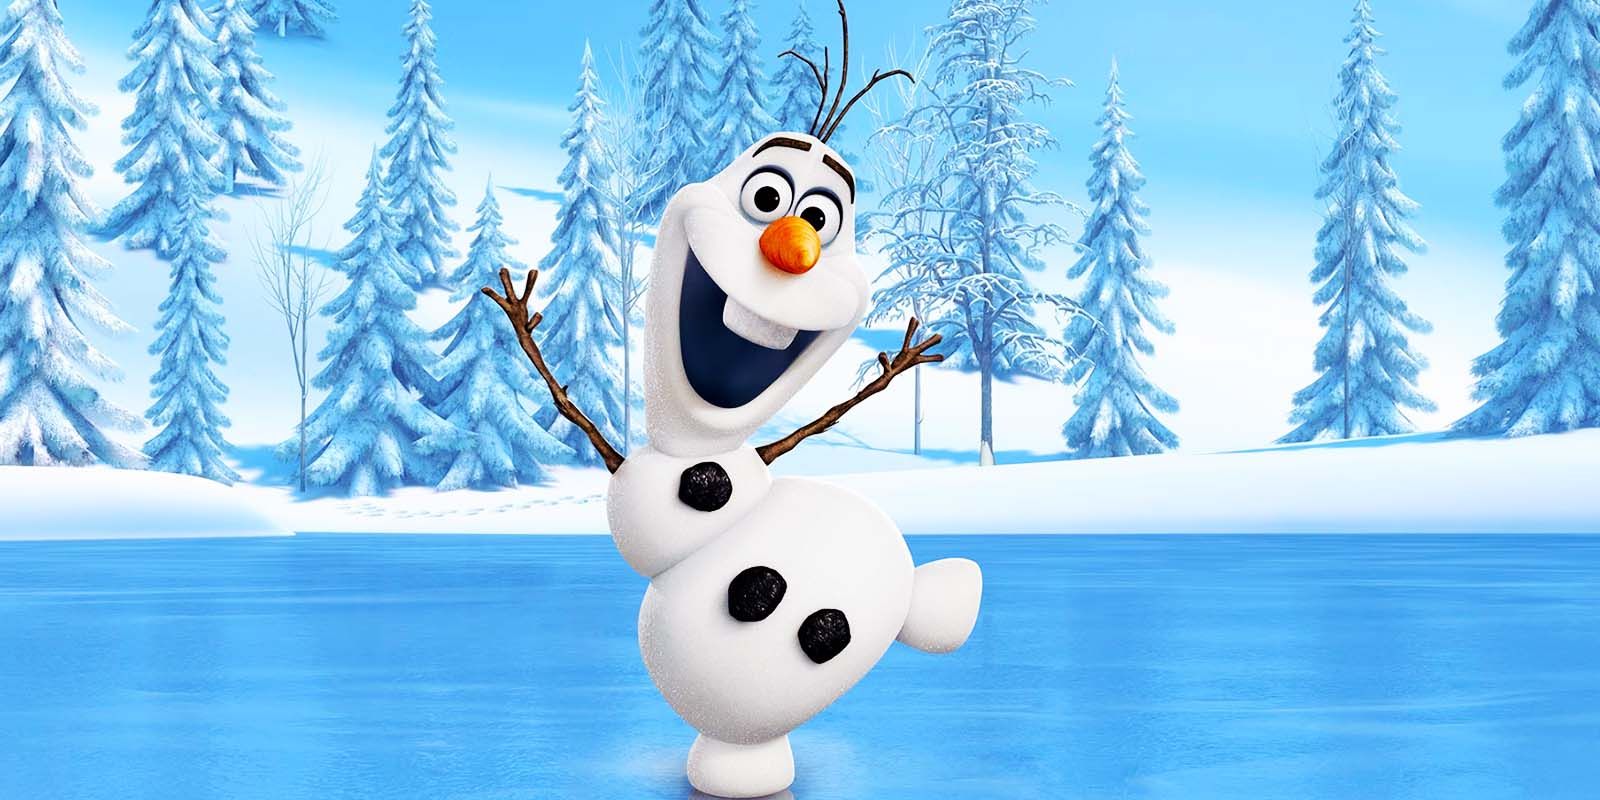 Olaf in 2013's Frozen